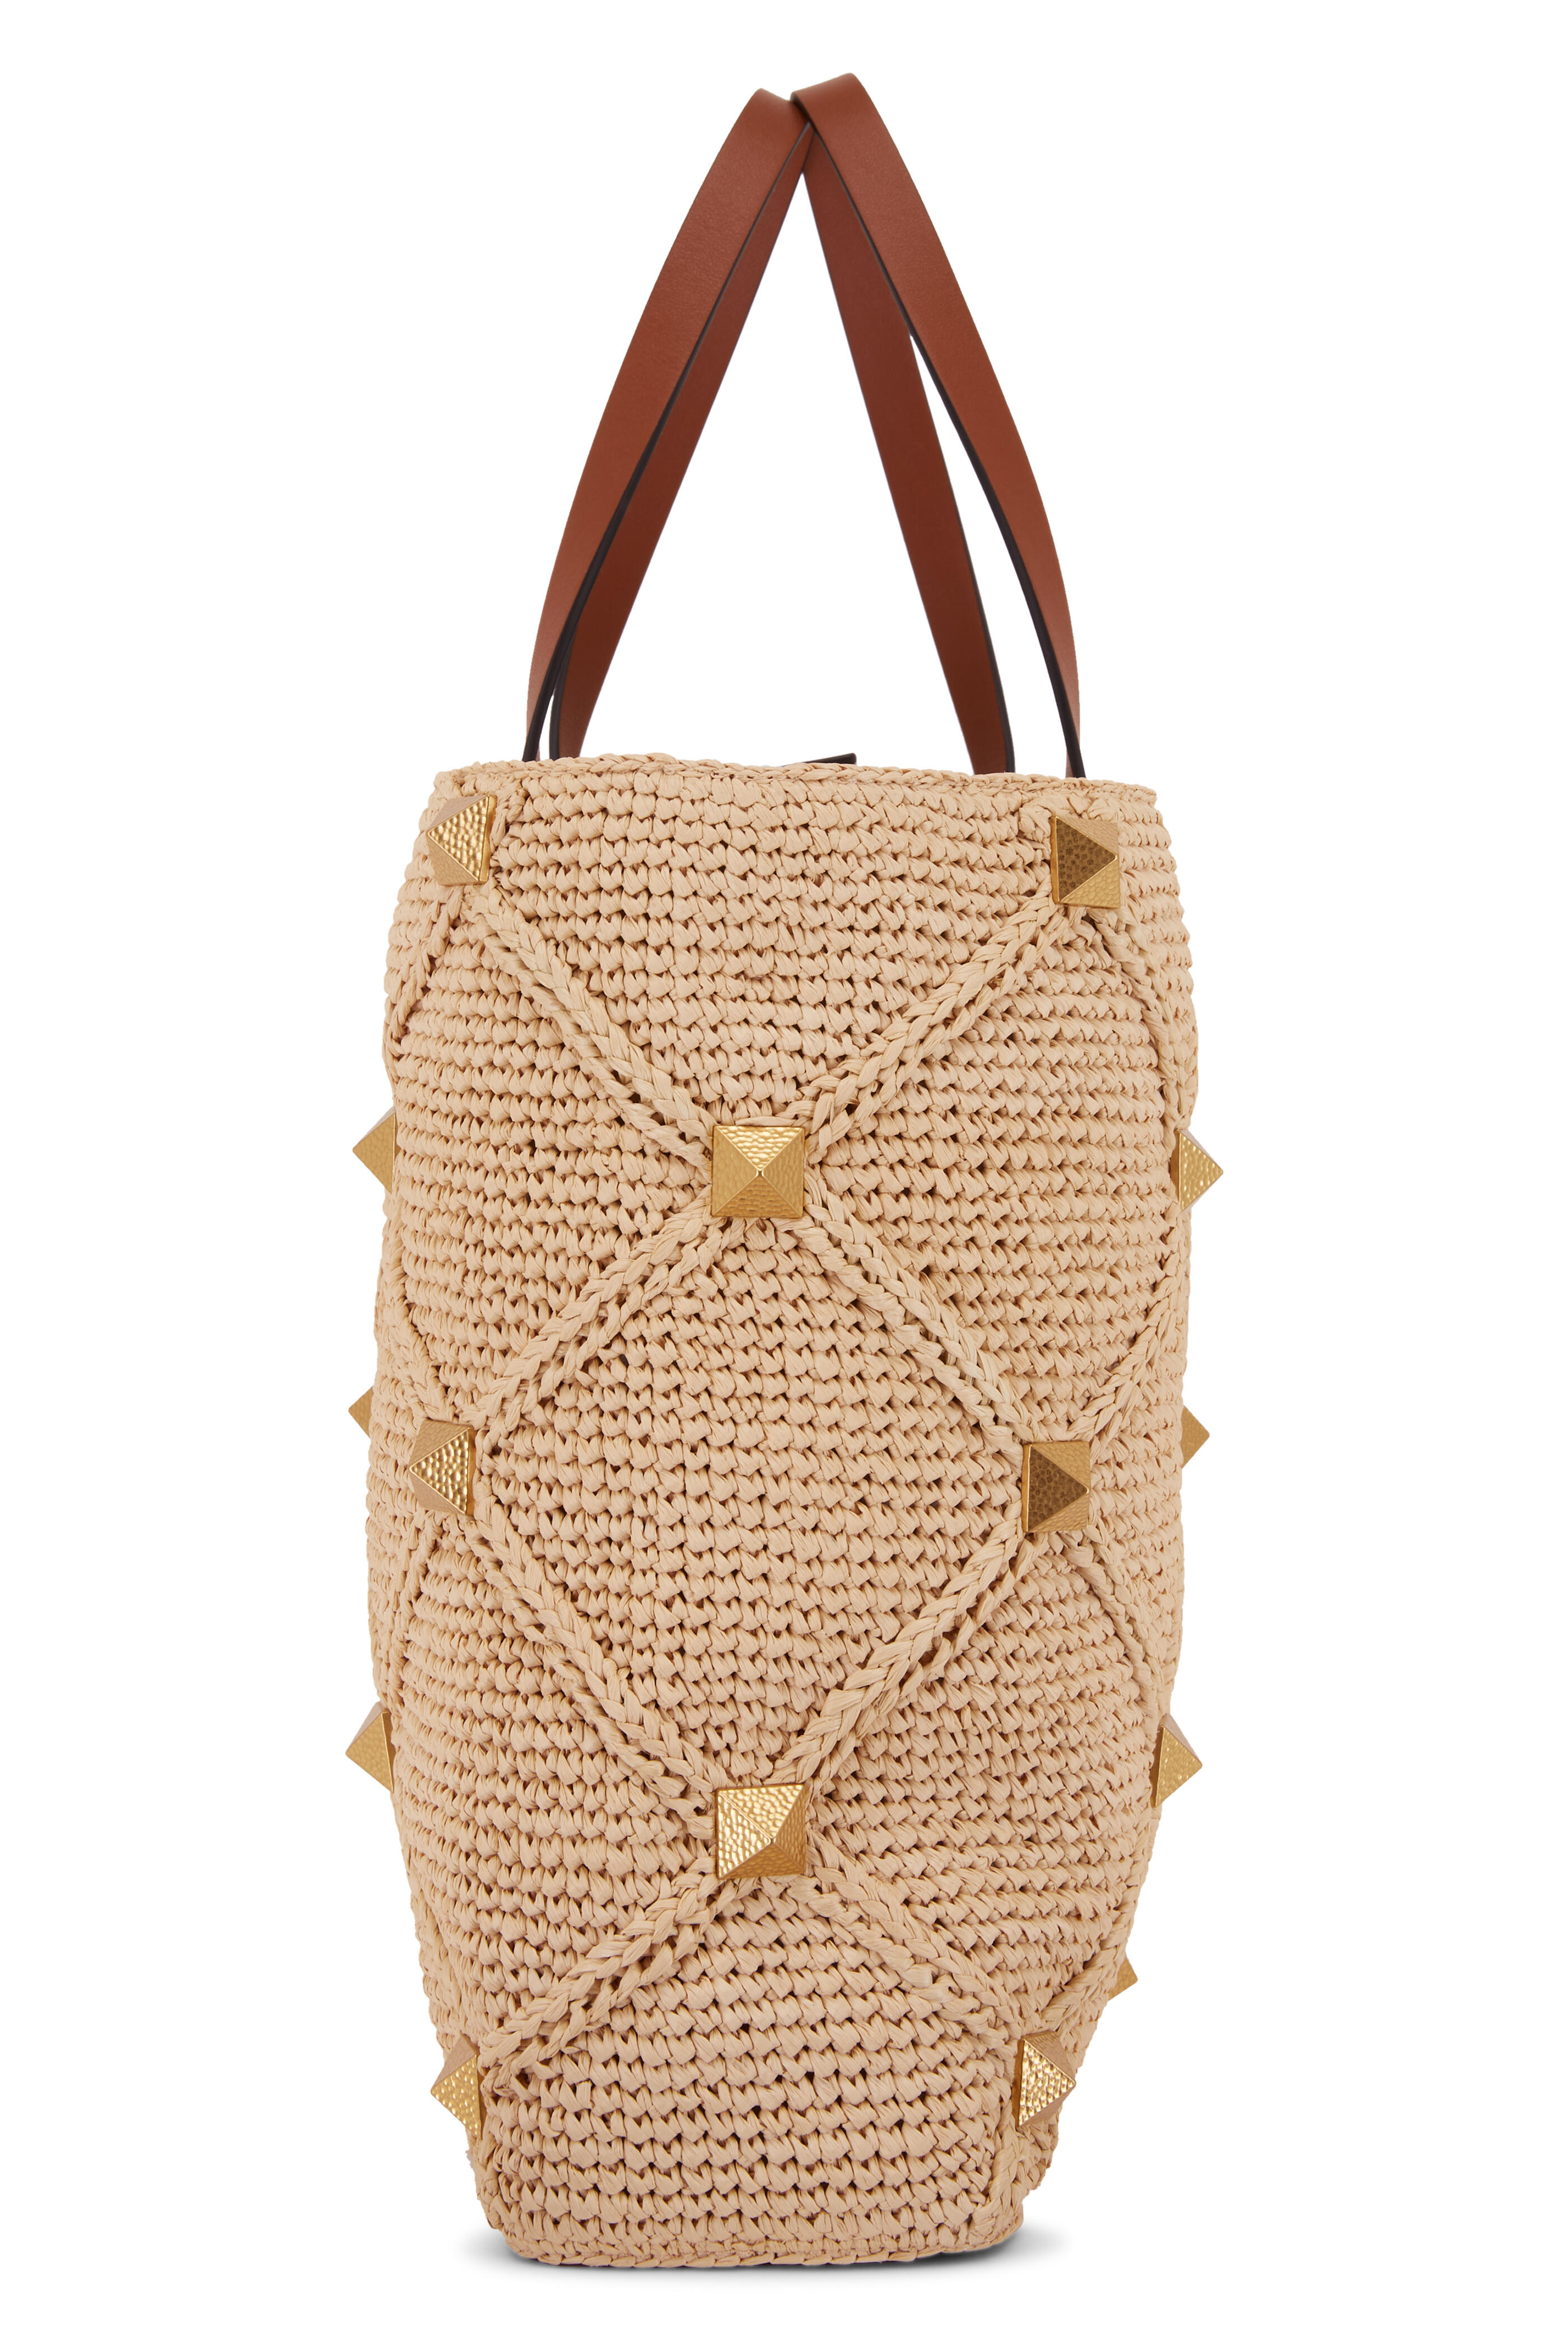 V Logo Small Crochet Tote Bag in Brown - Valentino Garavani